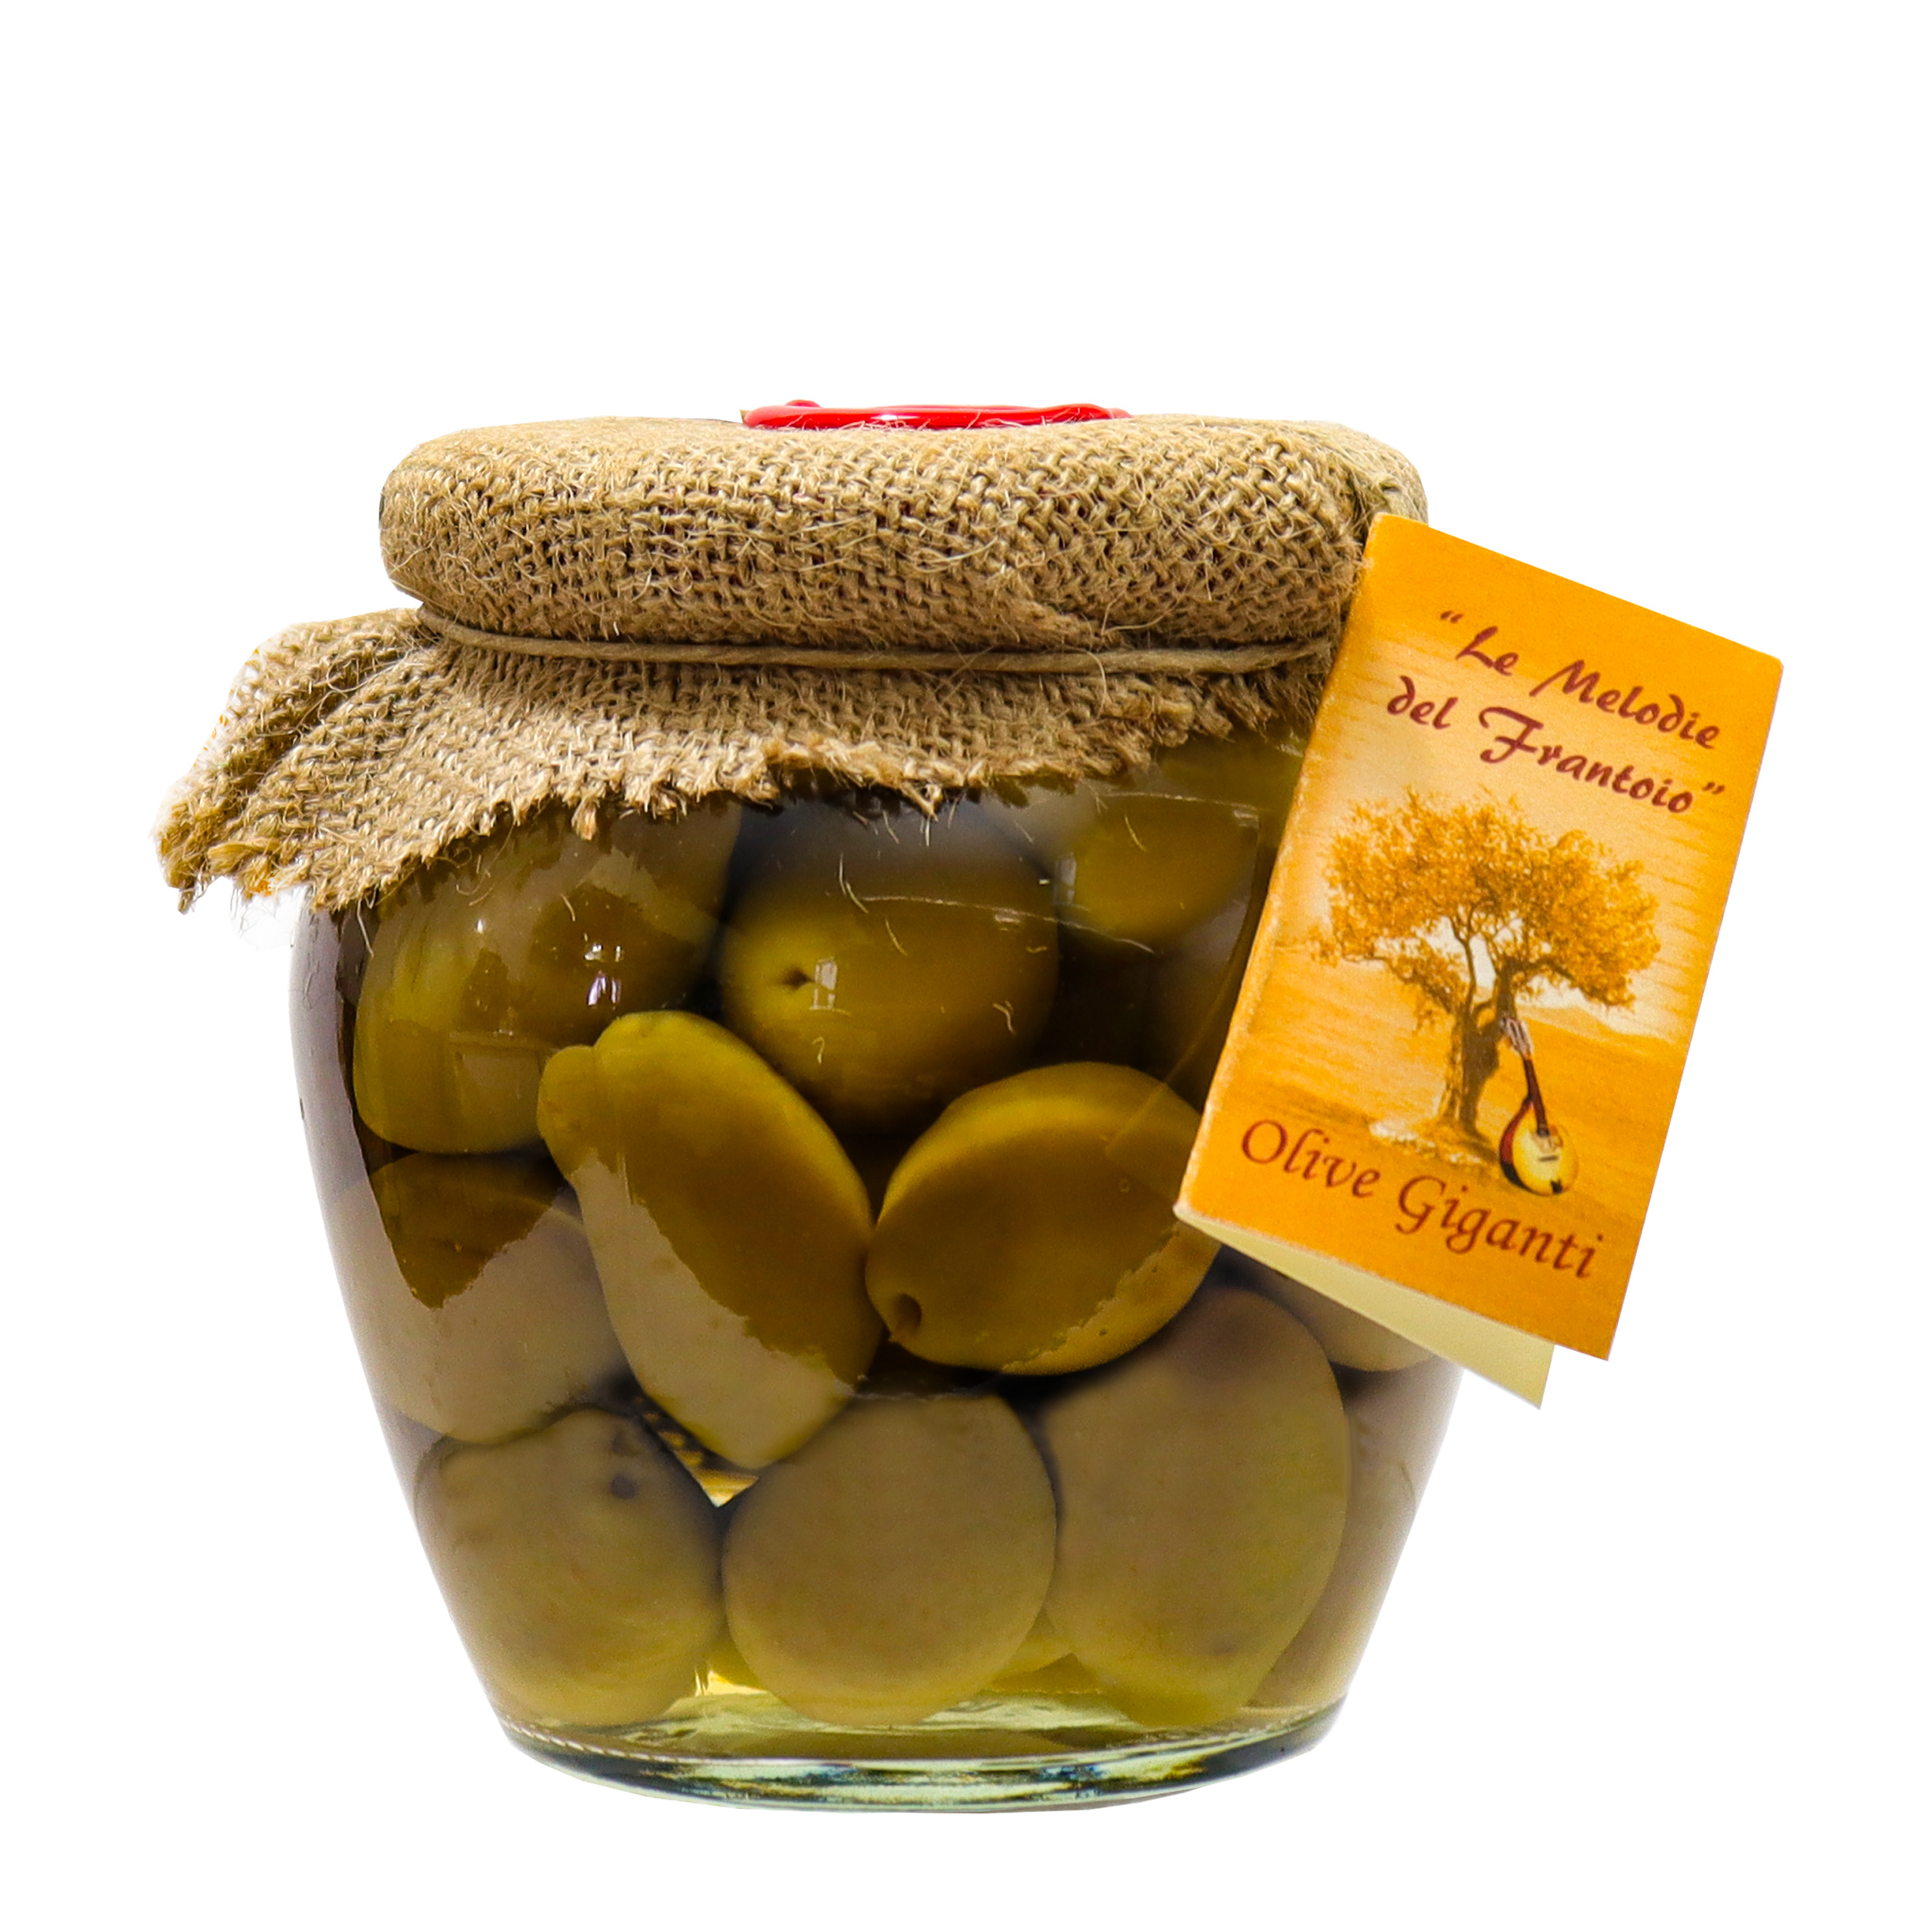 Olive verdi giganti in barattolo di vetro